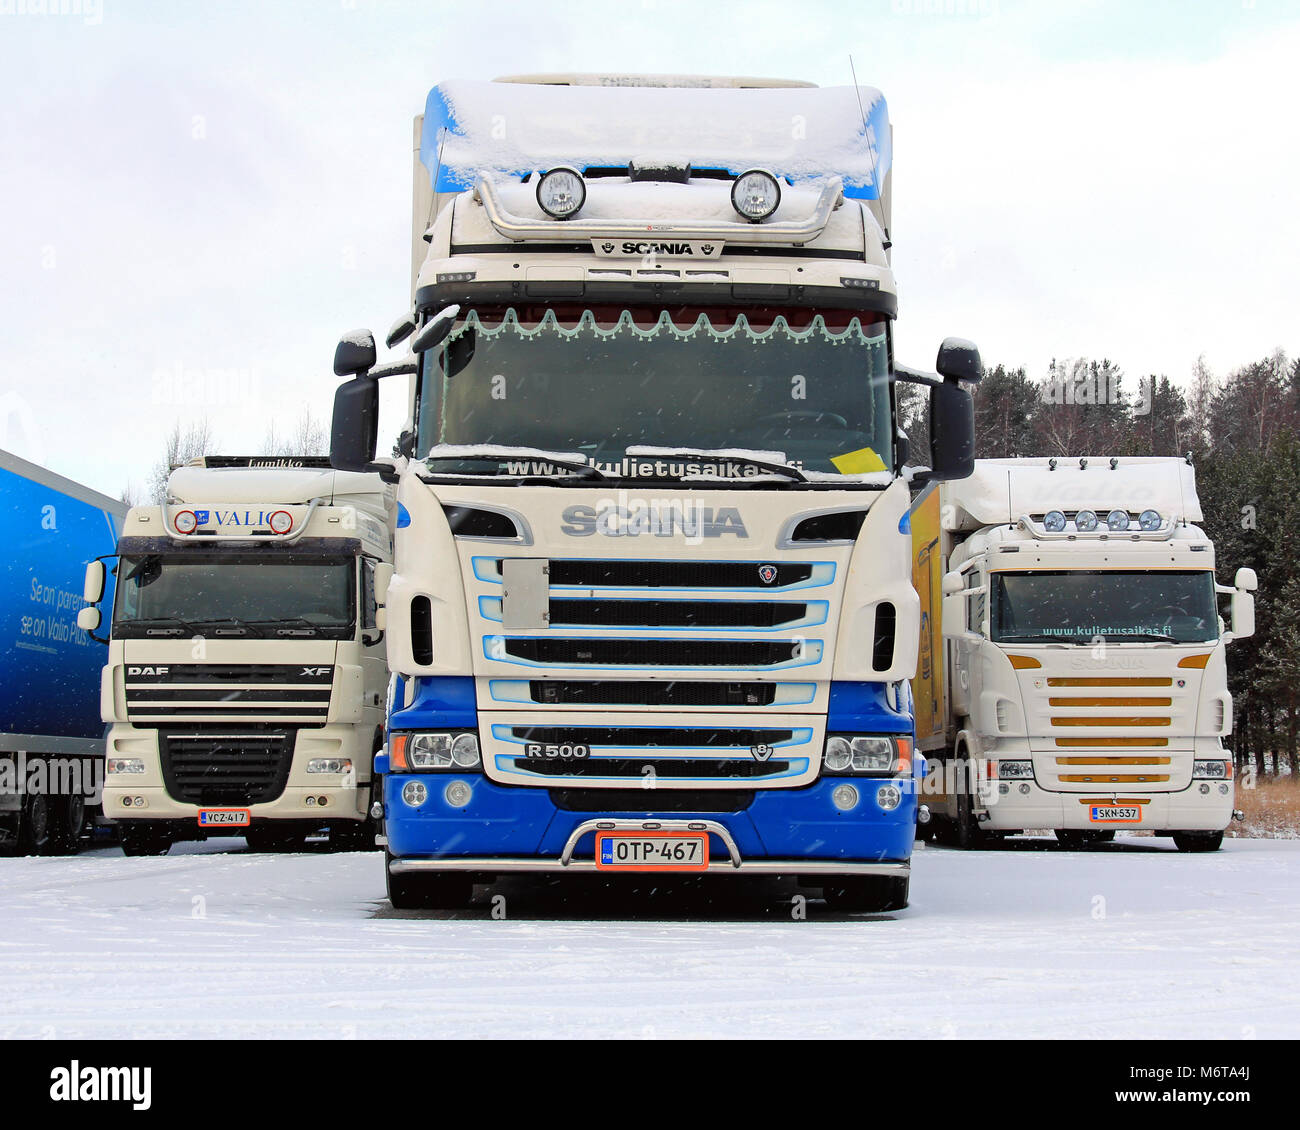 SALO, Finlandia - 12 de enero de 2014: Scania R500 V8 largo camión de transporte en la nieve. 108 Ecolution por camiones Scania se entregan a hopi, un importante logisti Foto de stock